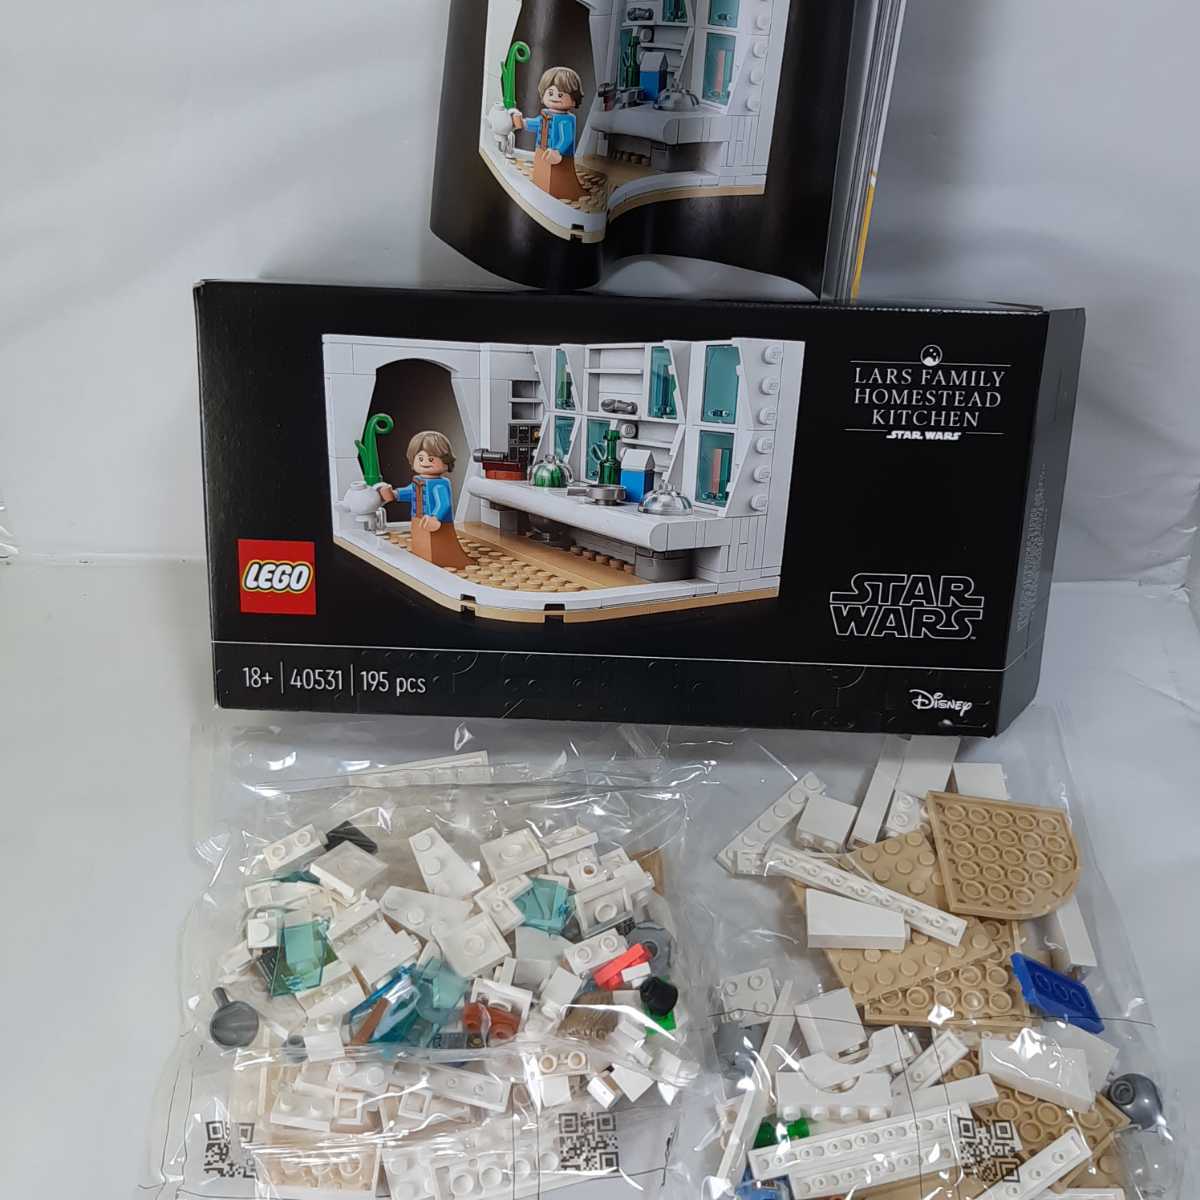  не продается пакет нераспечатанный LEGO 40531la-z дом. кухня Lego Star * War z Roo k дом STARWARS Звездные войны редкость редкий 